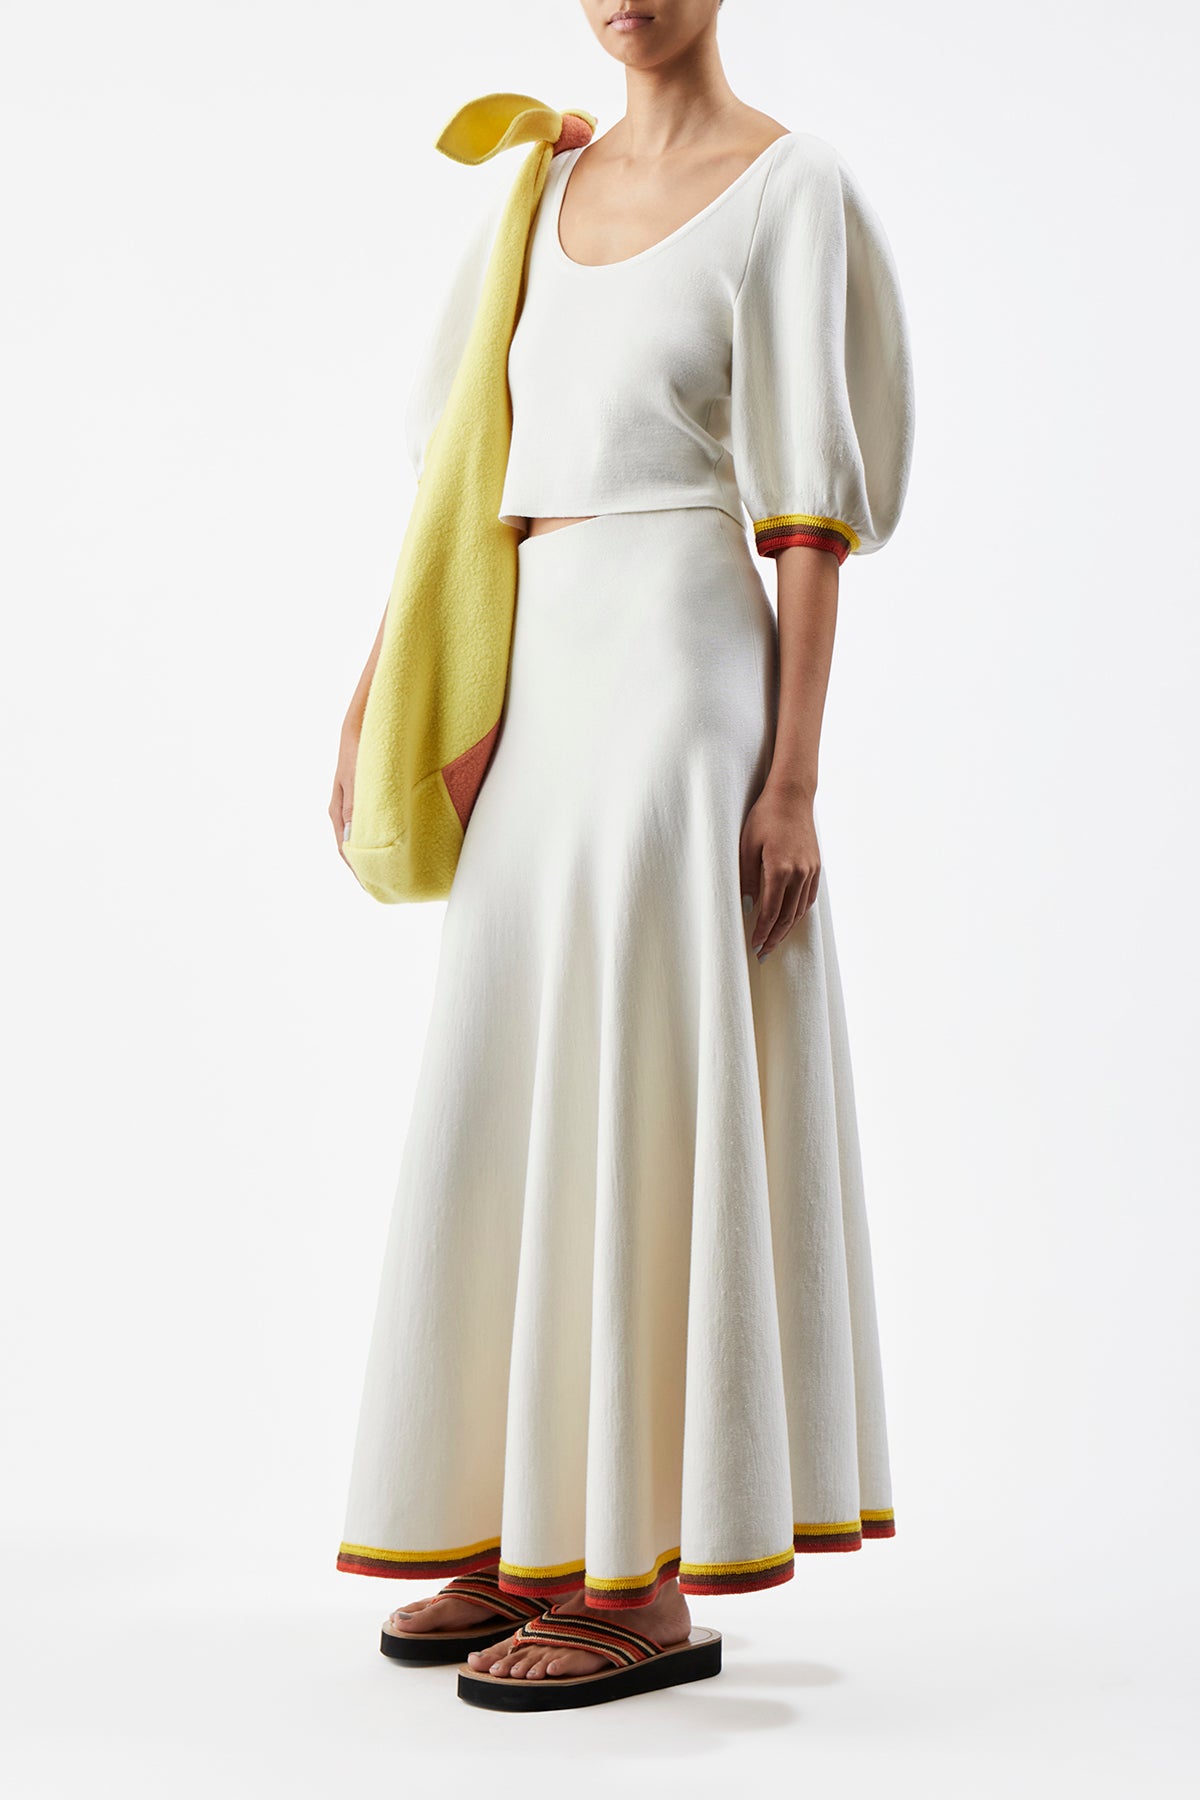 Mira Skirt in Ivory Multi Merino Wool